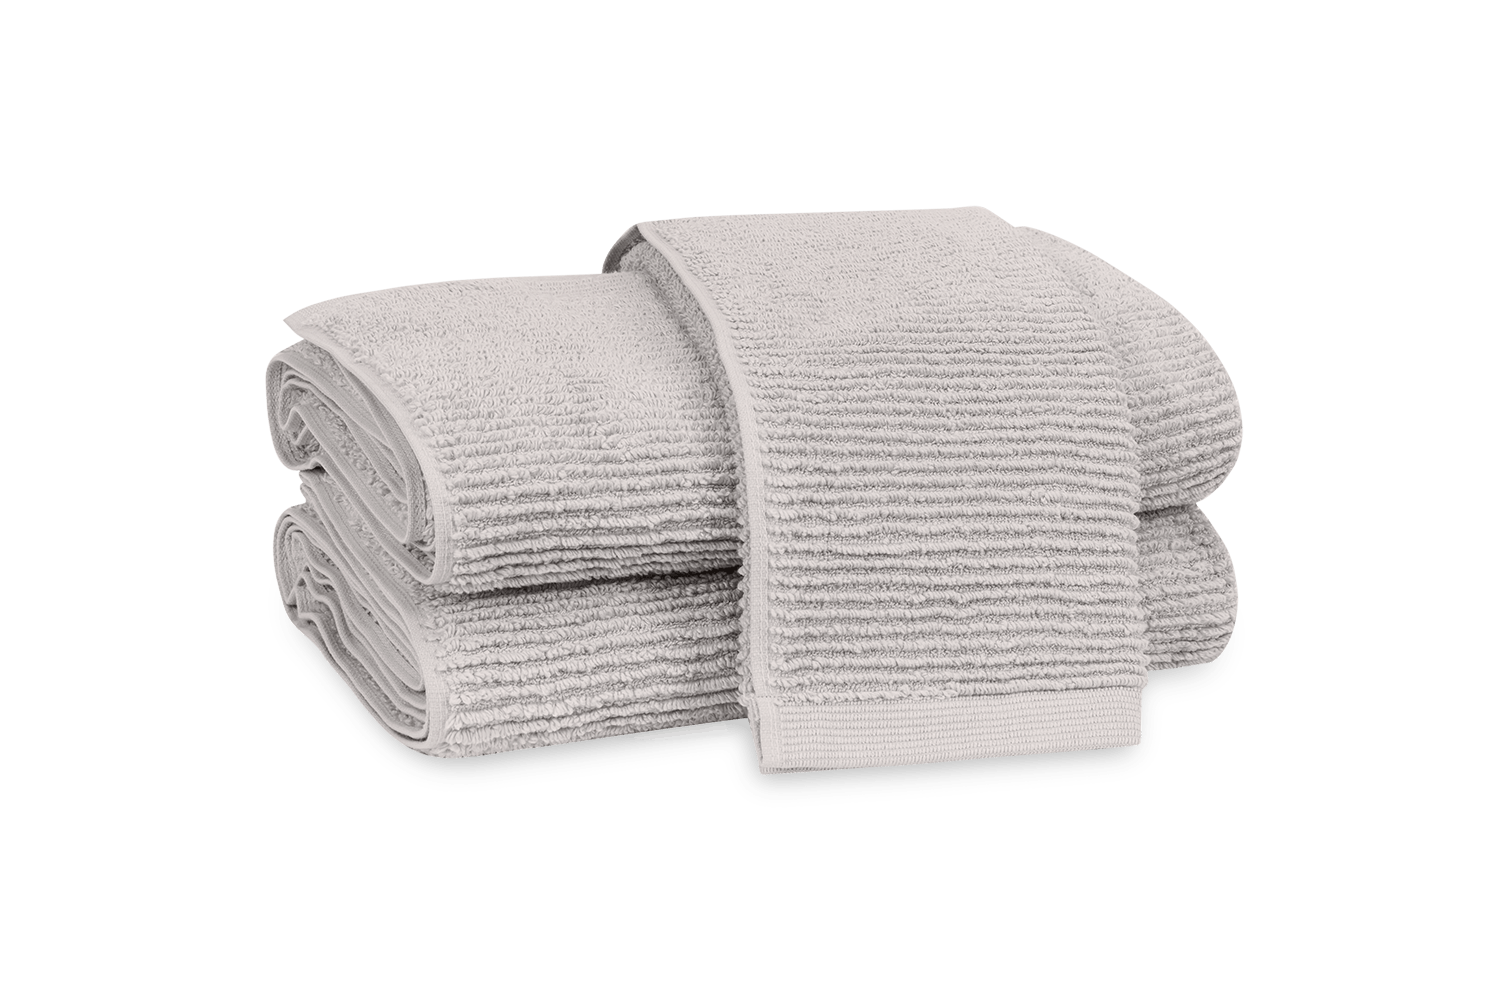 Fine Linens | Adelphi Towels by Matouk